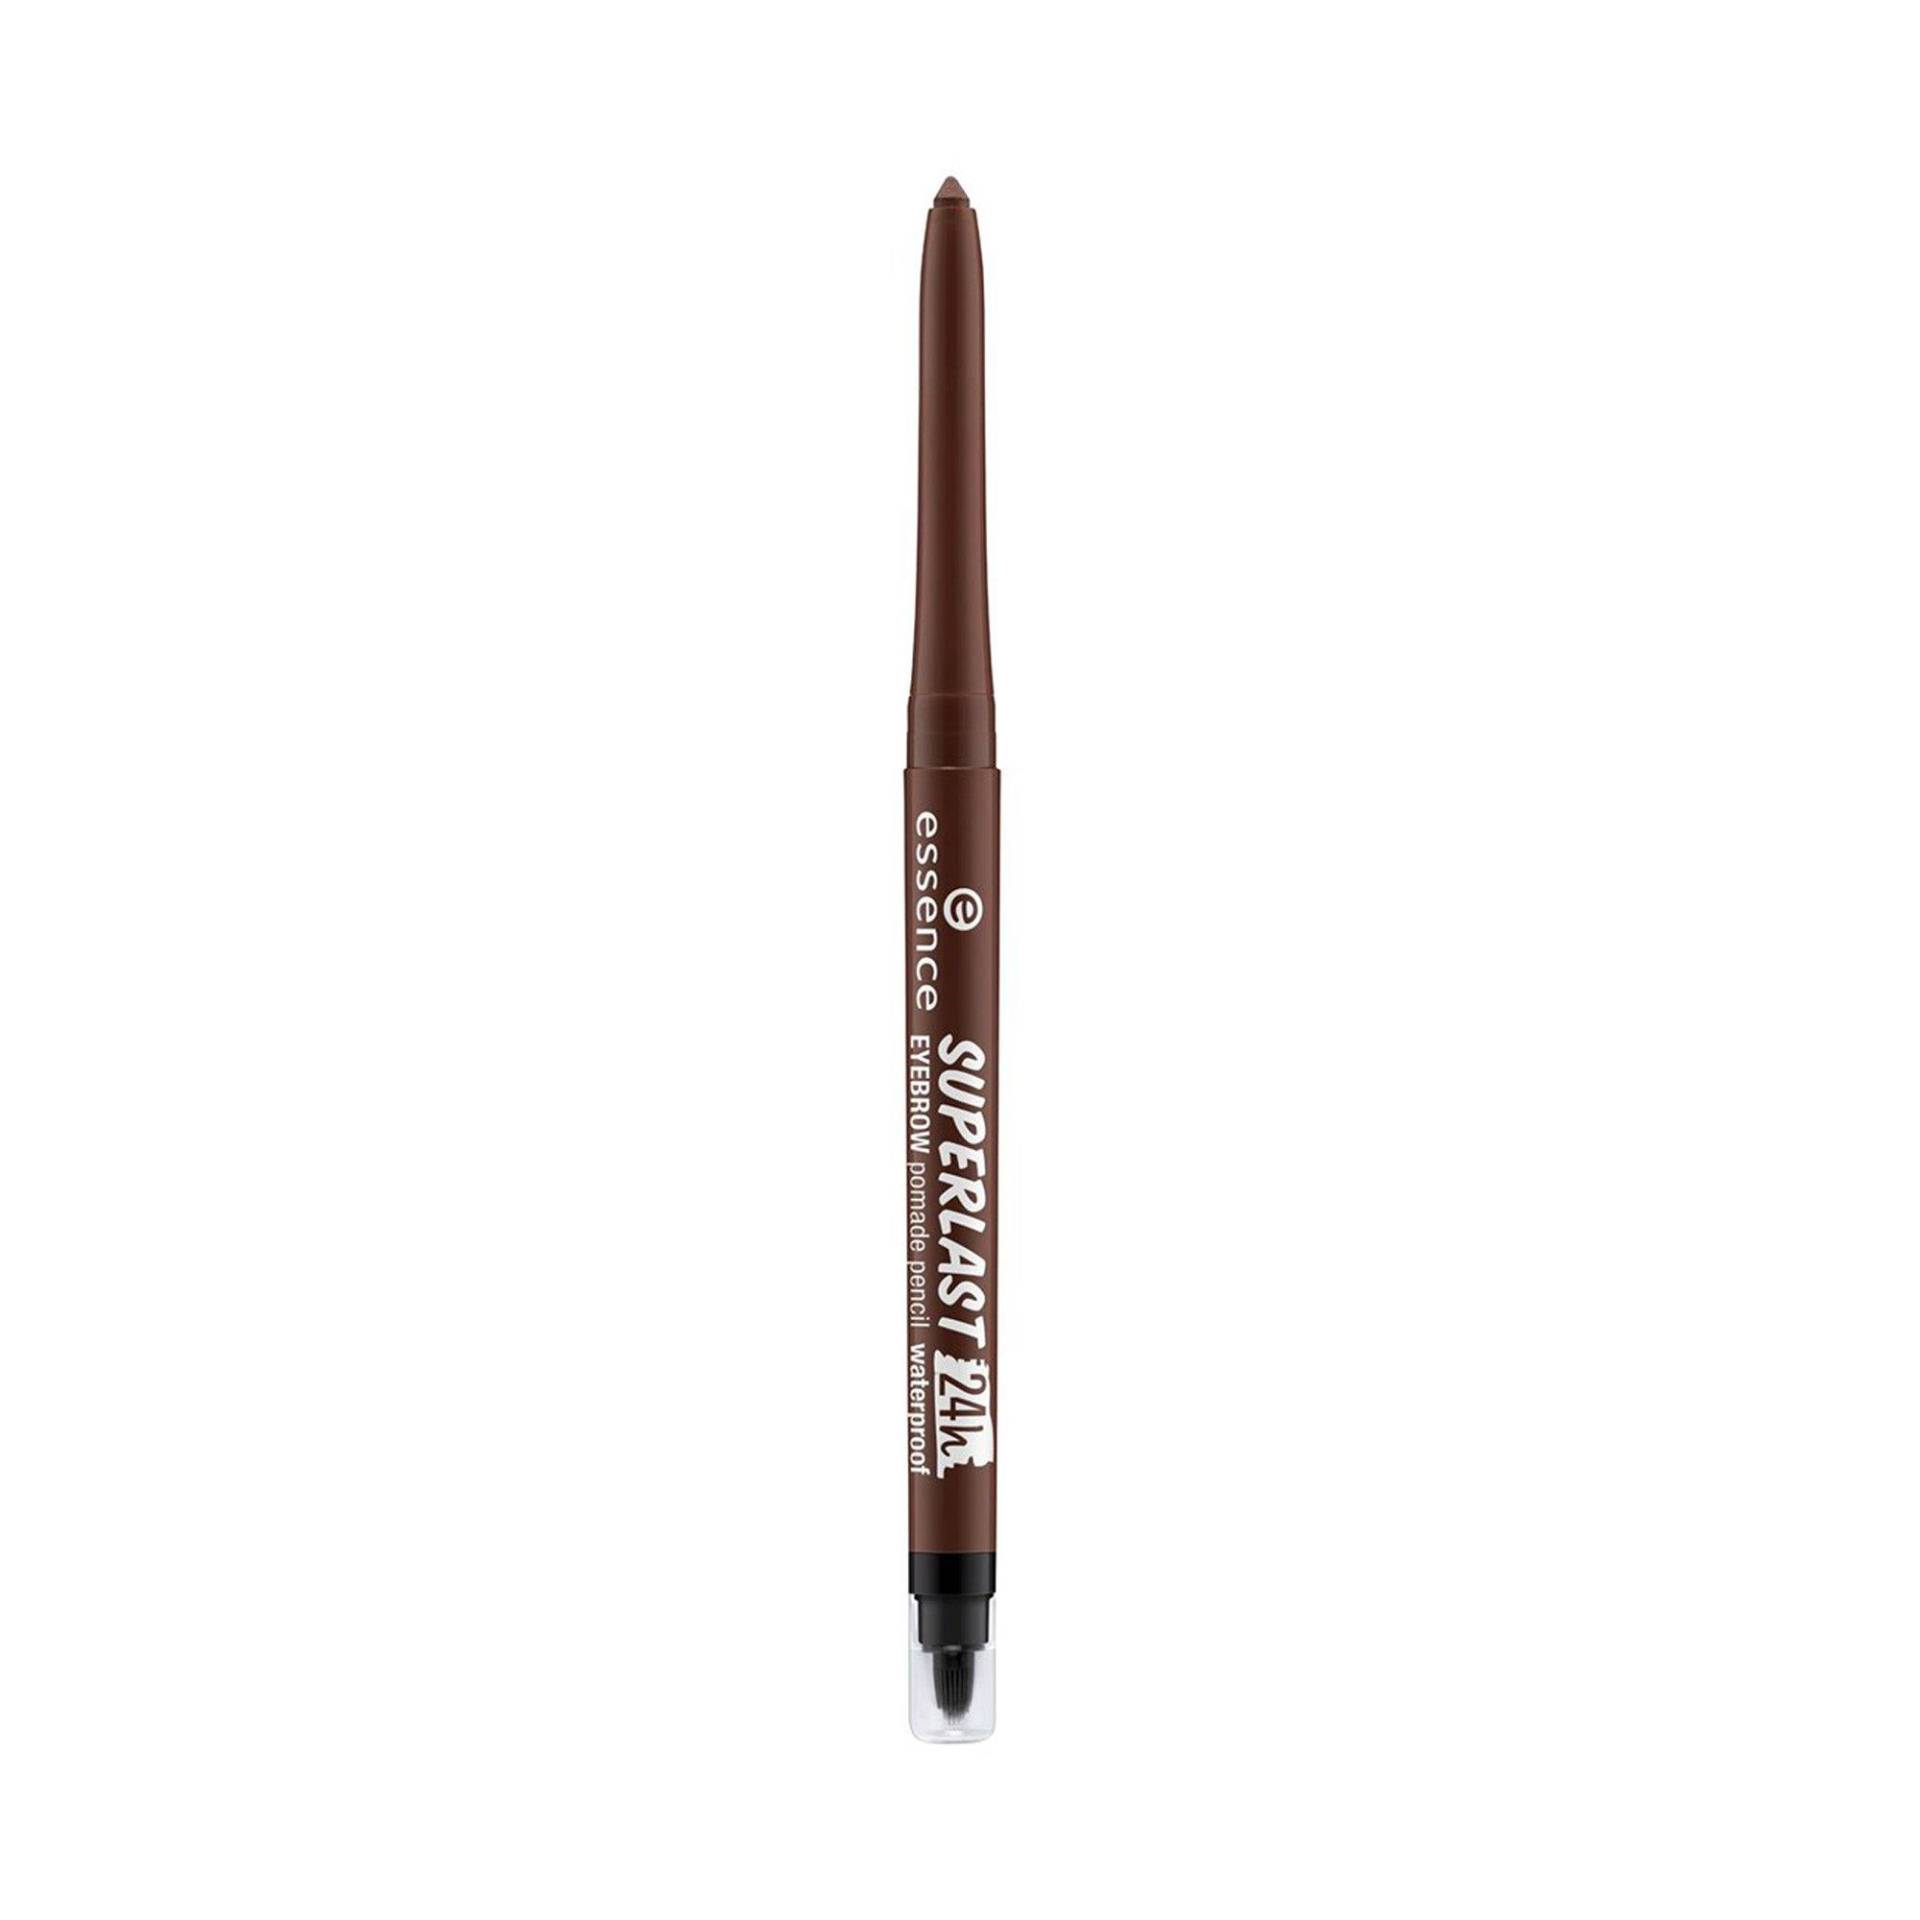 Superlast 24h Eyebrow Pomade Pencil Waterproof Damen braun 0.28G von essence